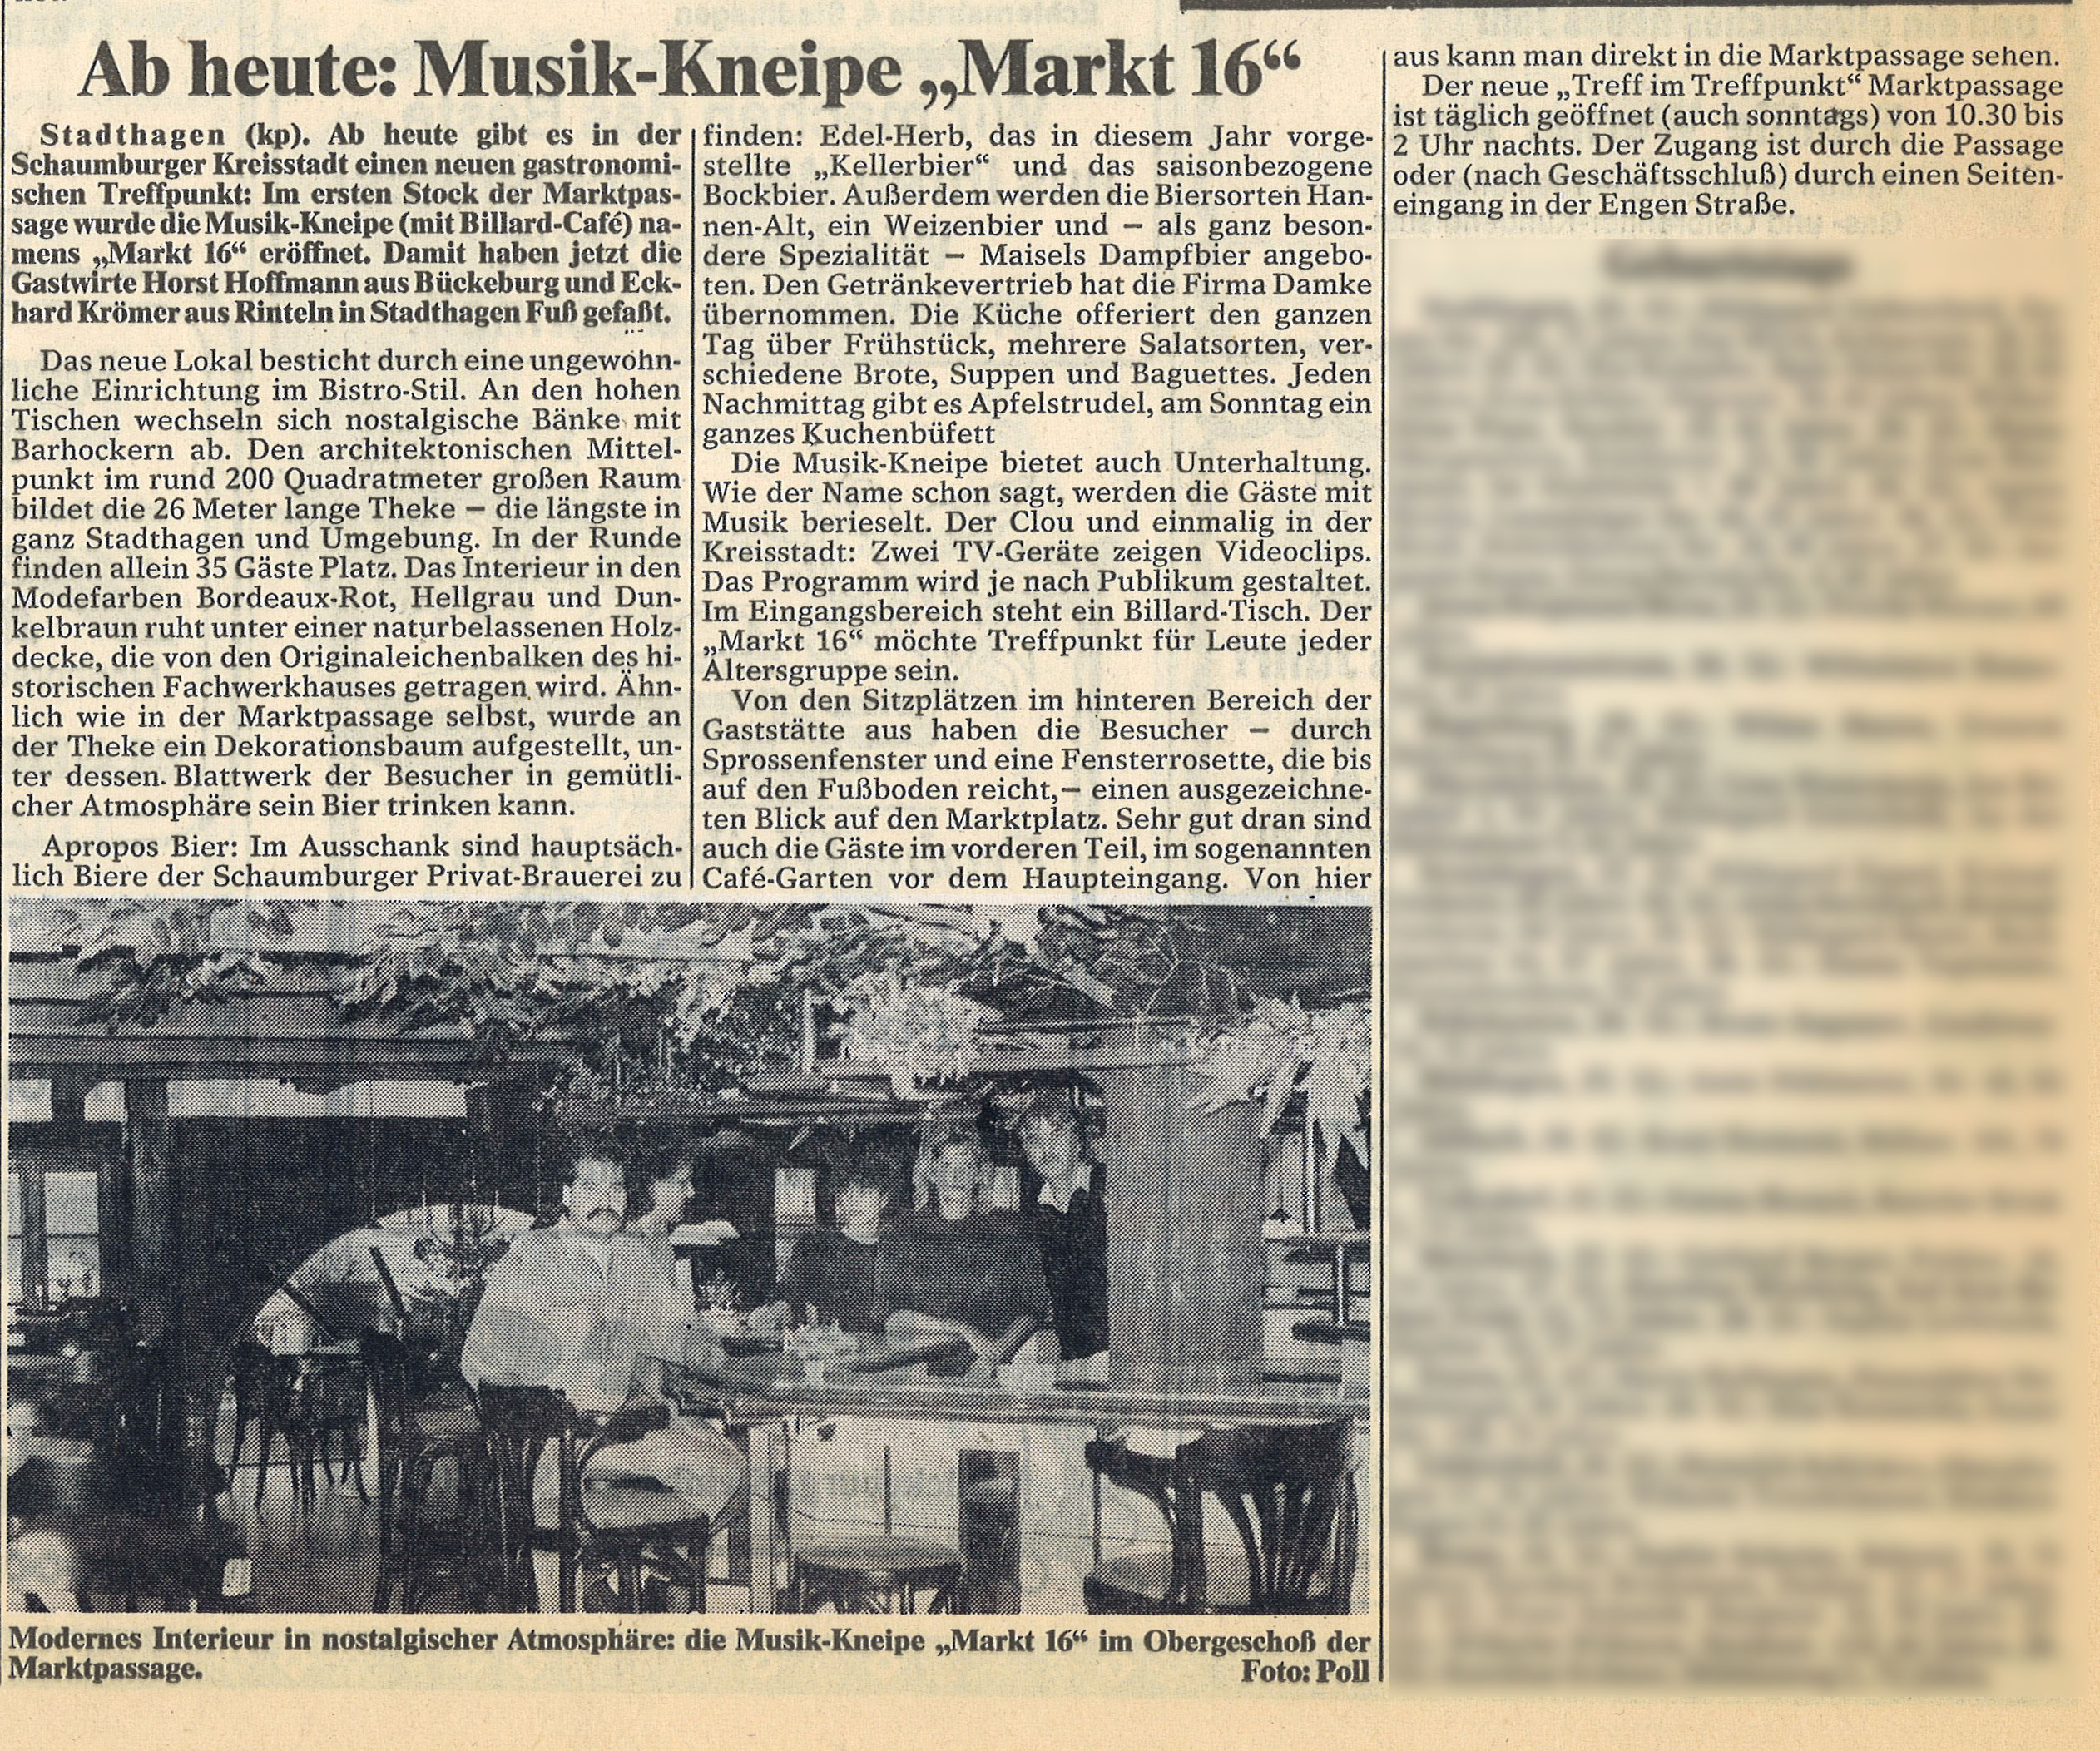 General-Anzeiger-1988-Dezember-22-Markt-16